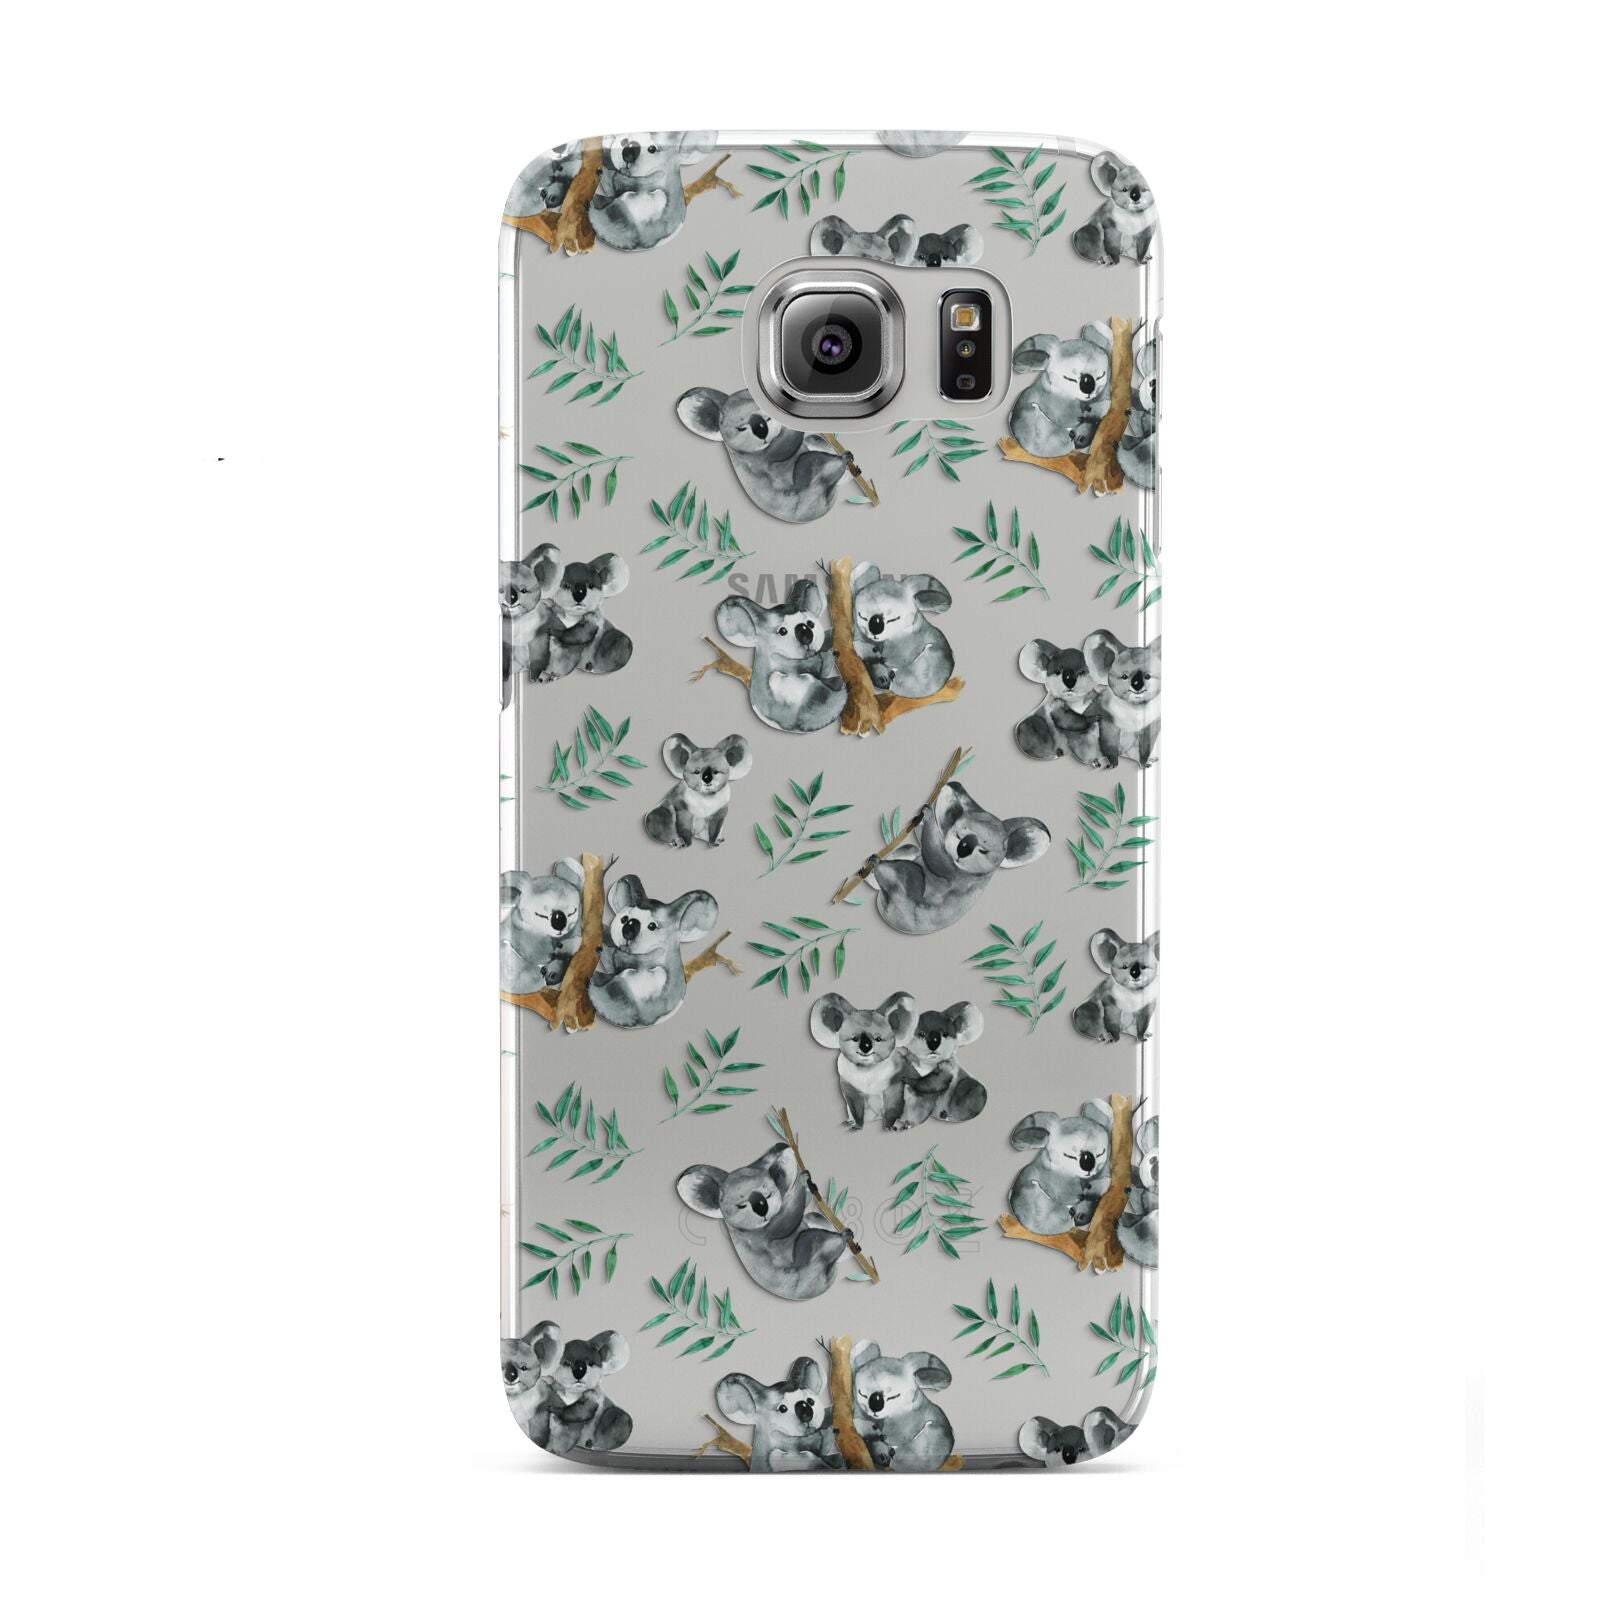 Koala Bear Samsung Galaxy S6 Case